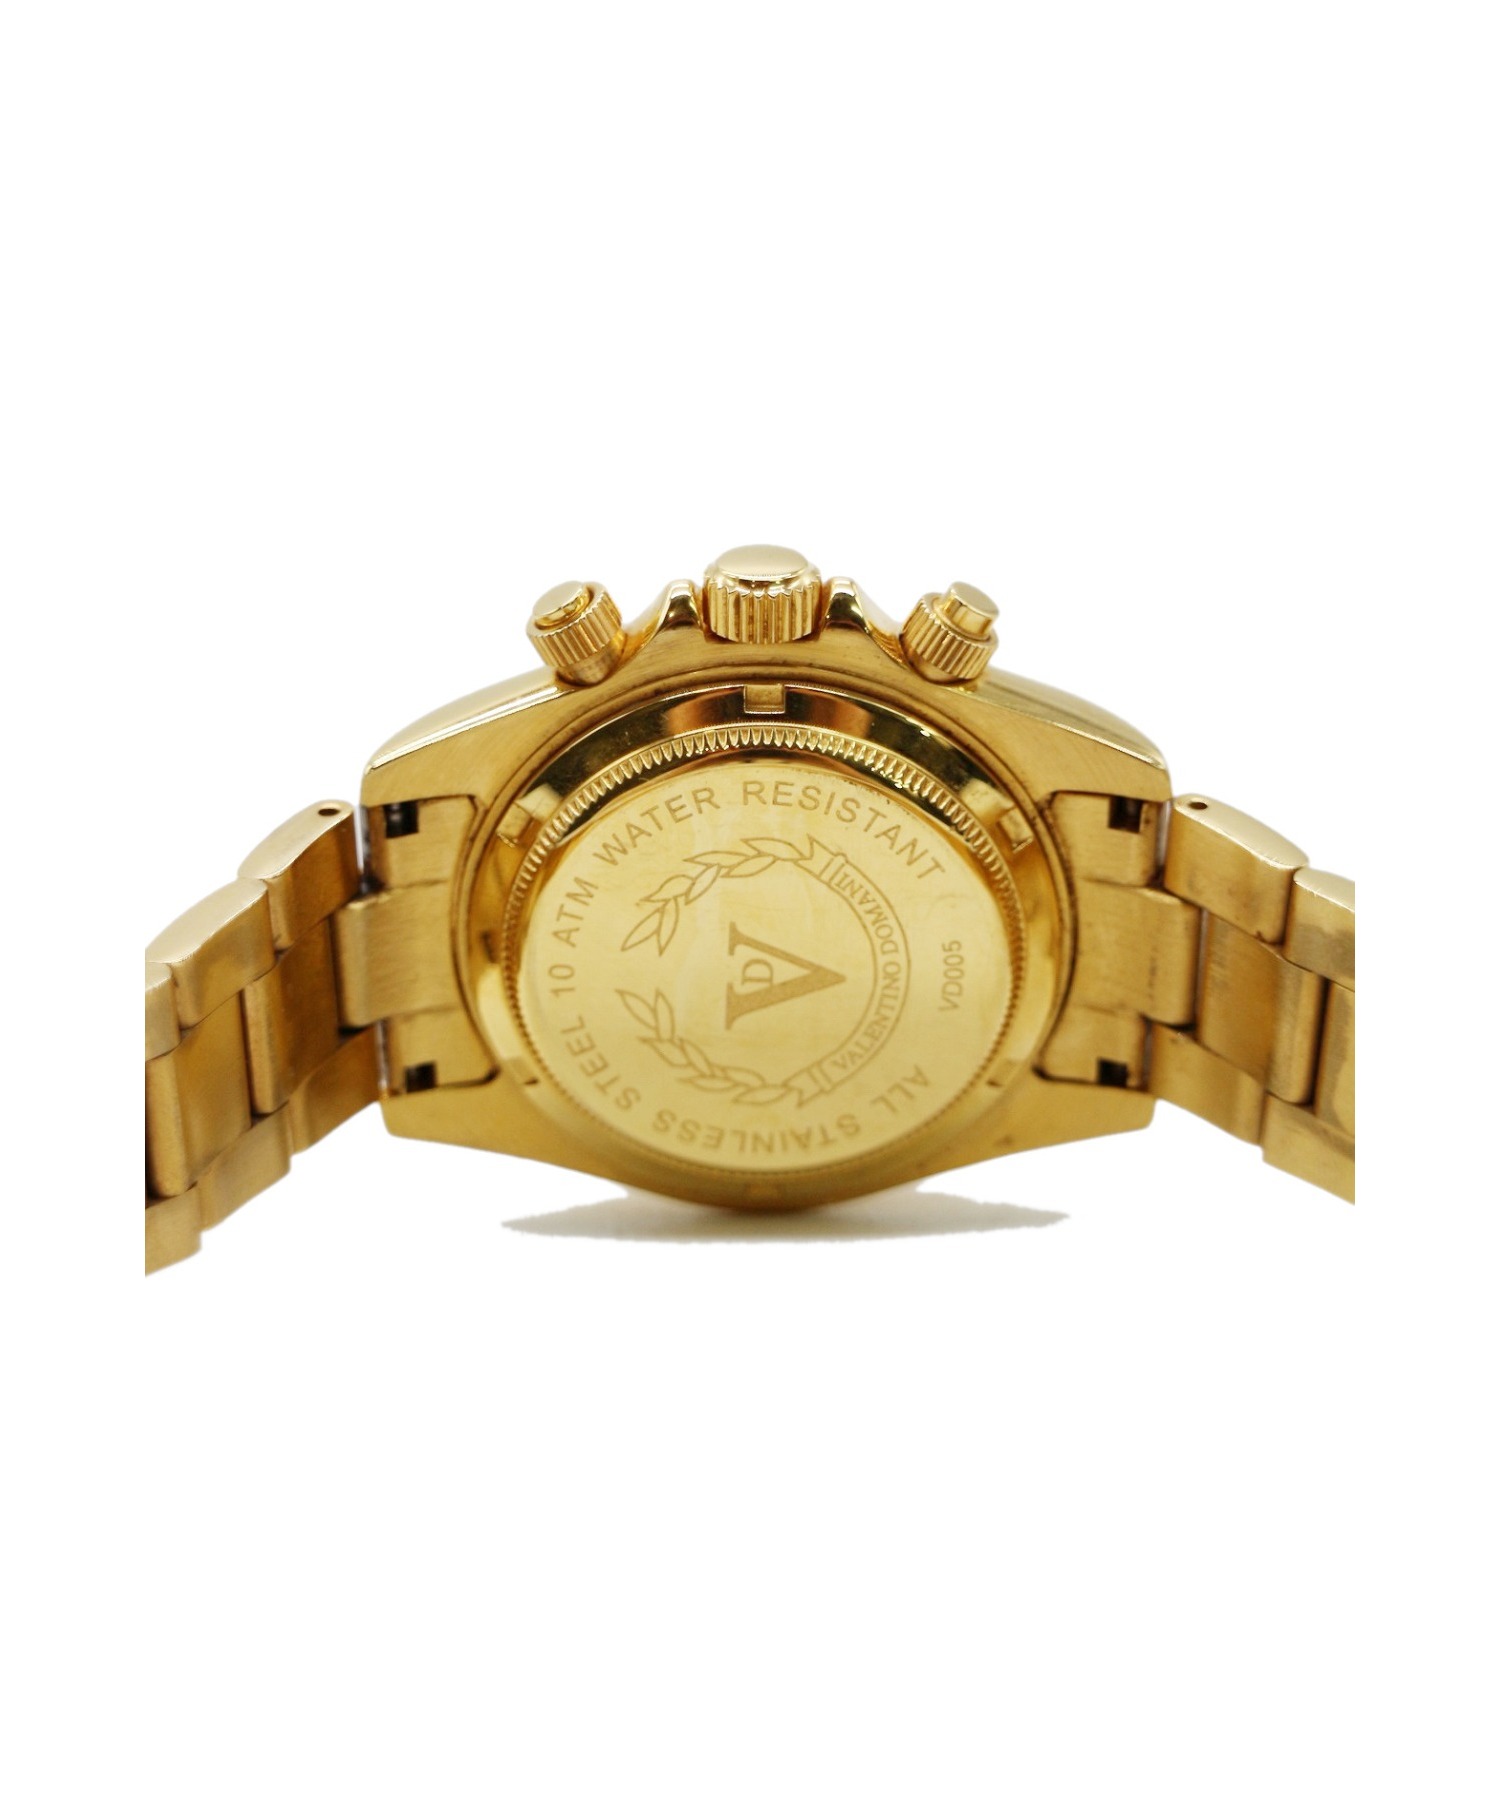 VALENTINO DOMANI (ヴァレンチノドマーニ) 腕時計 ゴールド VD005 クォーツ